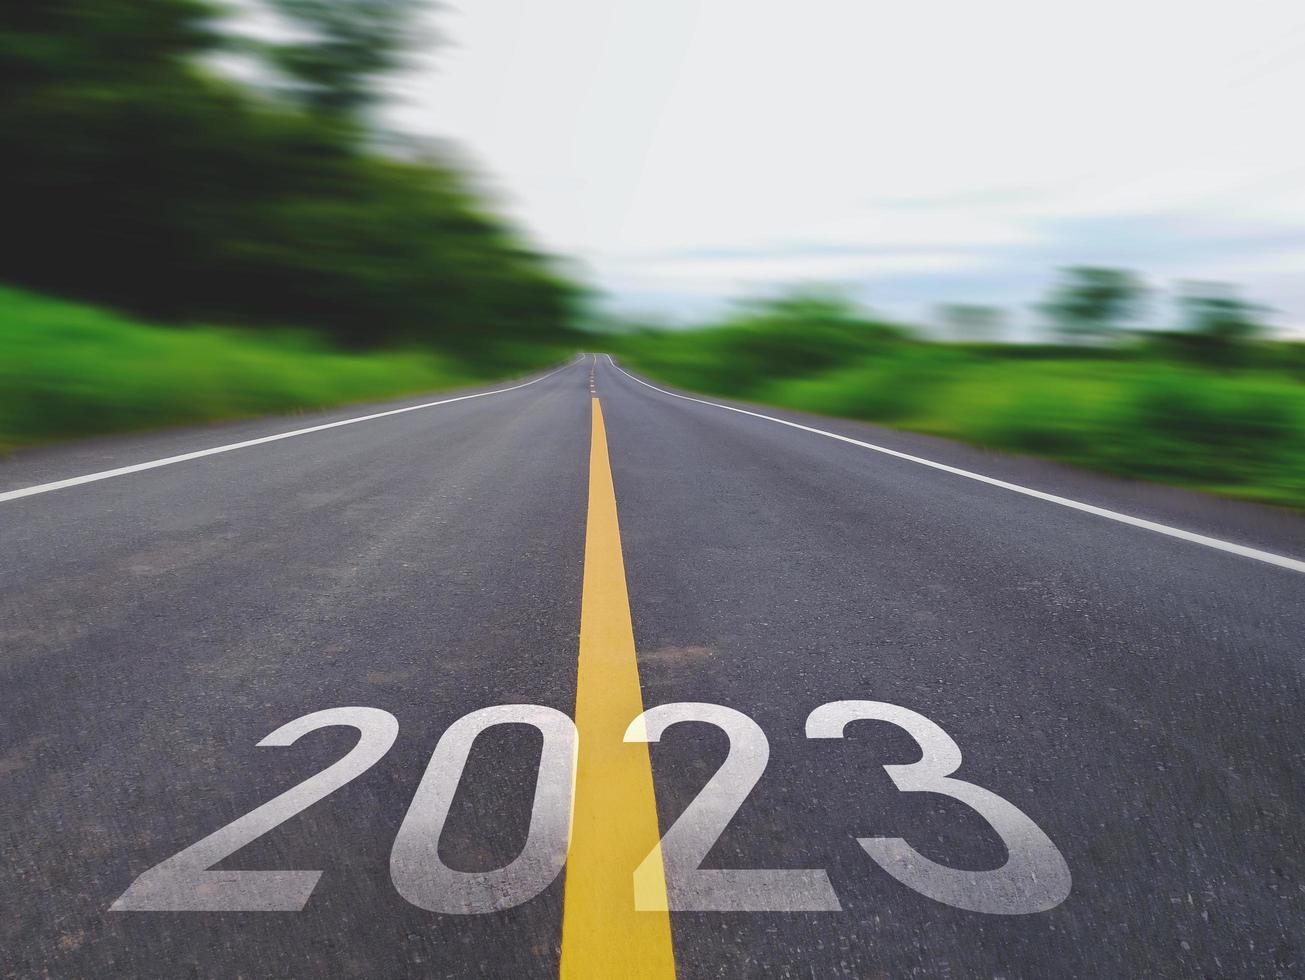 concept de nouvelle année et nouvelle route avec le mot 2022 à 2023 écrit sur la route goudronnée dans une belle route de campagne avec des champs d'herbe verte des deux côtés concept pour la nouvelle année ou vision de 2023 photo